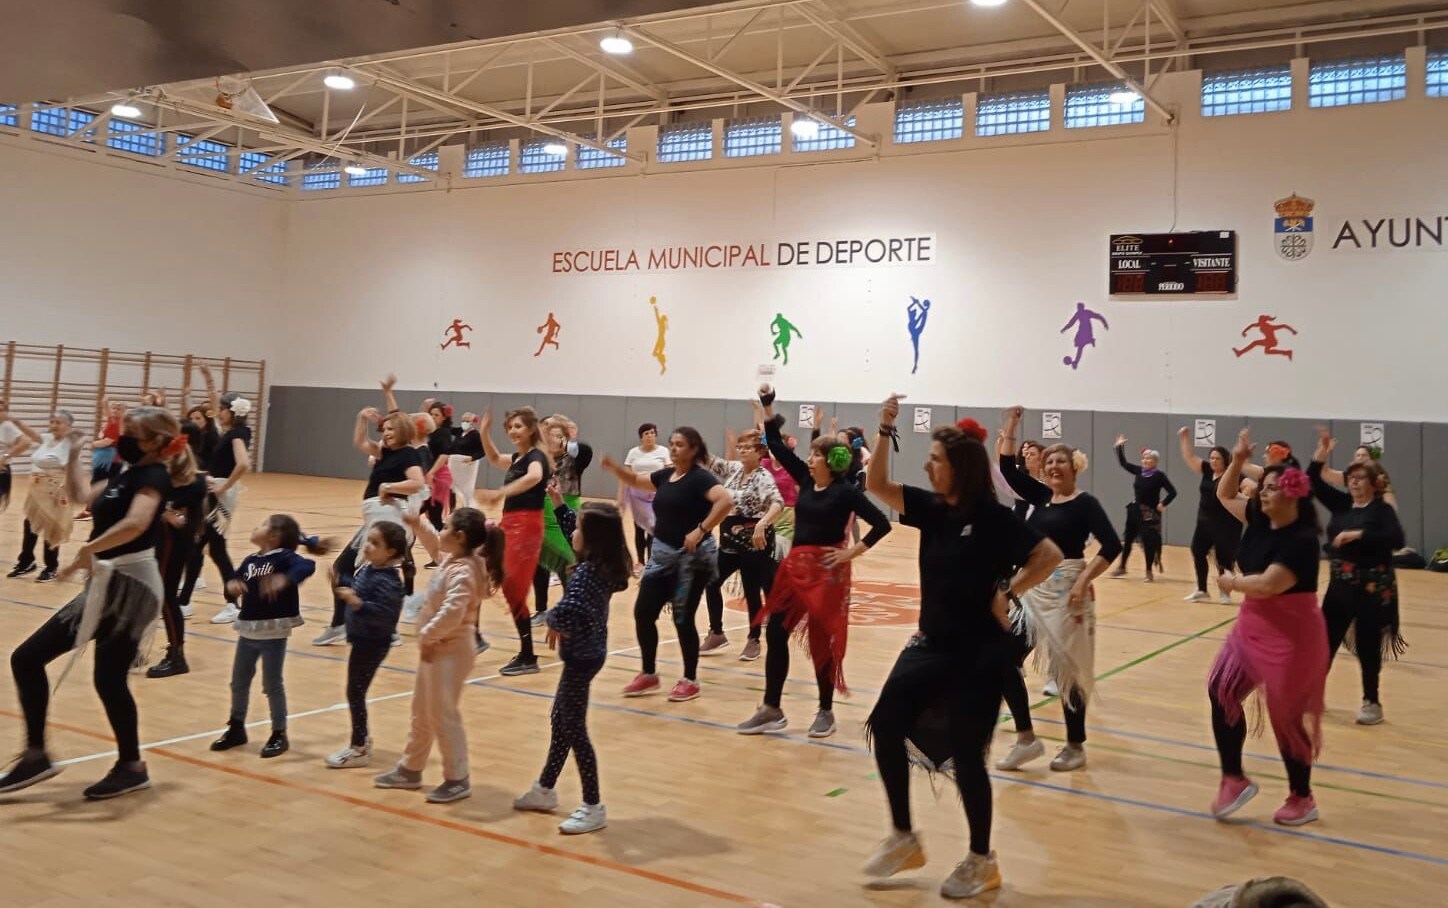 Más de un centenar de mujeres participaron en una masterclass de aerobic al son de la rumba